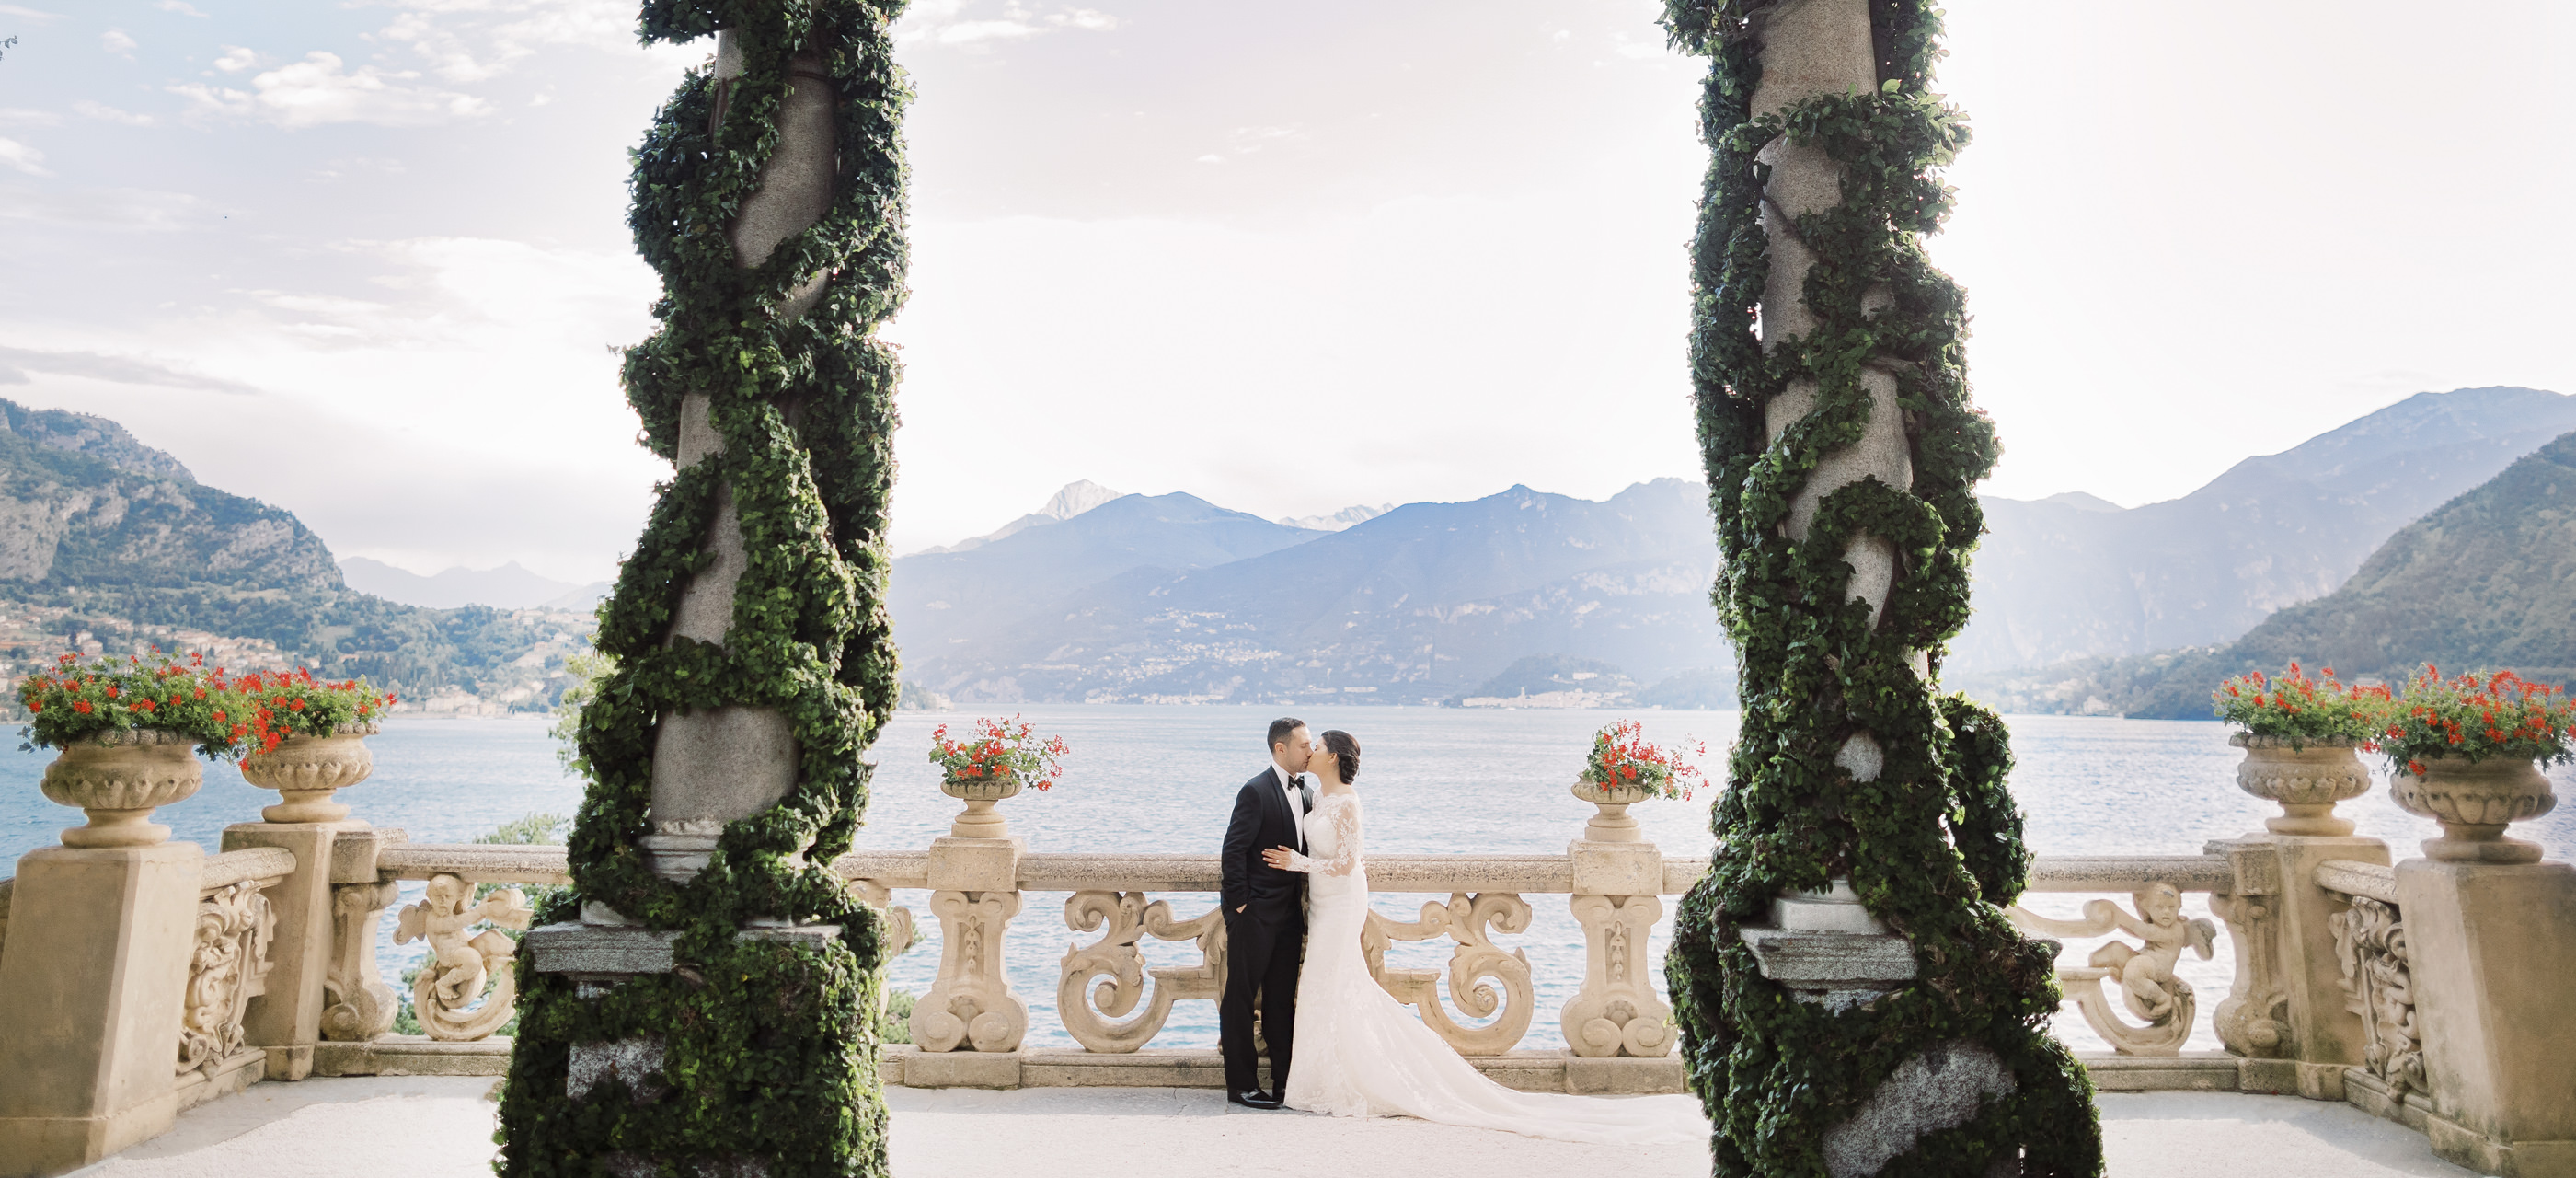 Wedding in a Lake Como Villa